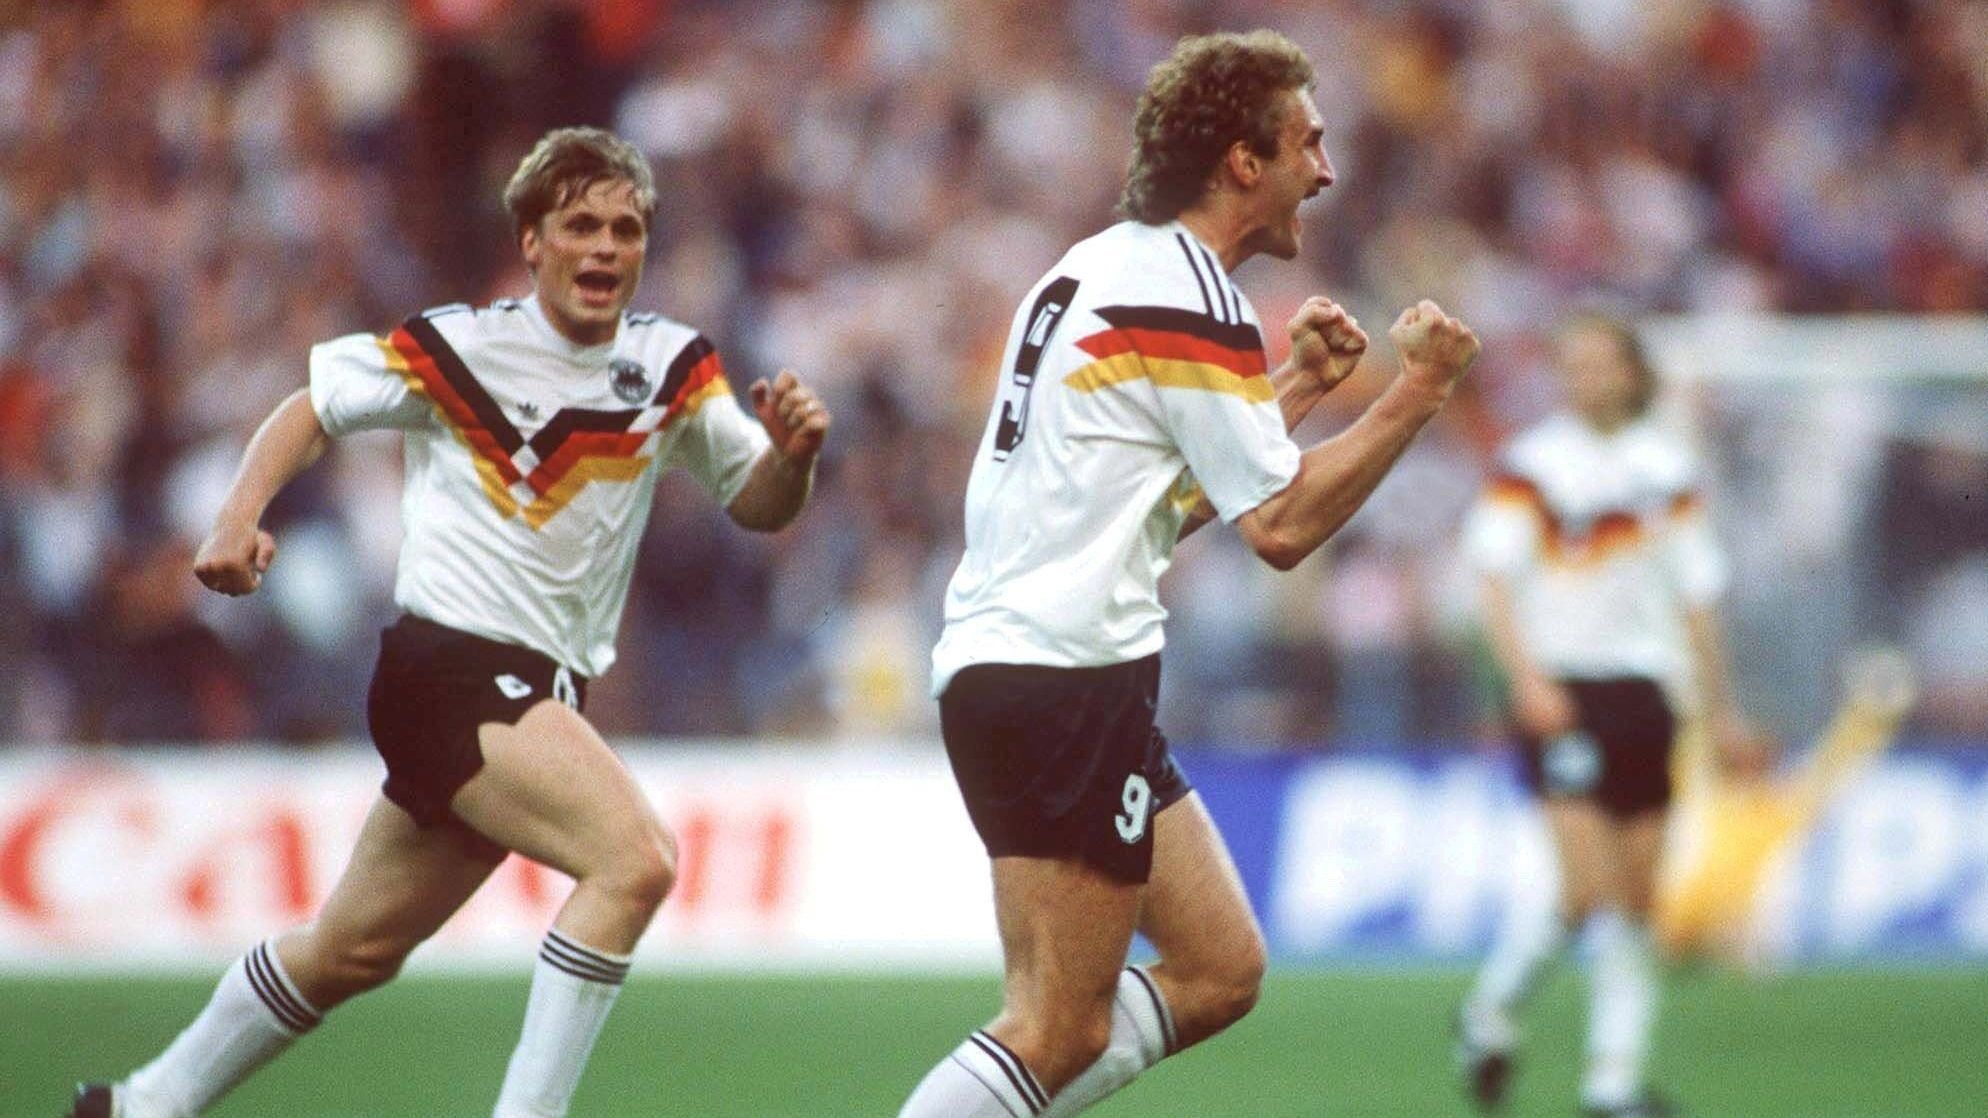 <strong>Die bisherigen großen Duelle zwischen Deutschland und Spanien</strong><br>Am Freitag trifft die deutsche Nationalmannschaft (<a target="_blank" href="https://www.ran.de/sports/ticker/ma10232474/liveticker?from=%2Flive">18 Uhr im ran-Liveticker</a>) zum neunten Mal in einem großen Turnier auf Spanien. Die Bilanz ist komplett ausgeglichen: Seit 1966 fuhr das DFB-Team in teilweise historischen Partien drei Siege ein, kassierte aber auch drei schmerzhafte Pleiten. In der Nations League gab es zusätzlich ebenfalls ein denkwürdiges Duell.